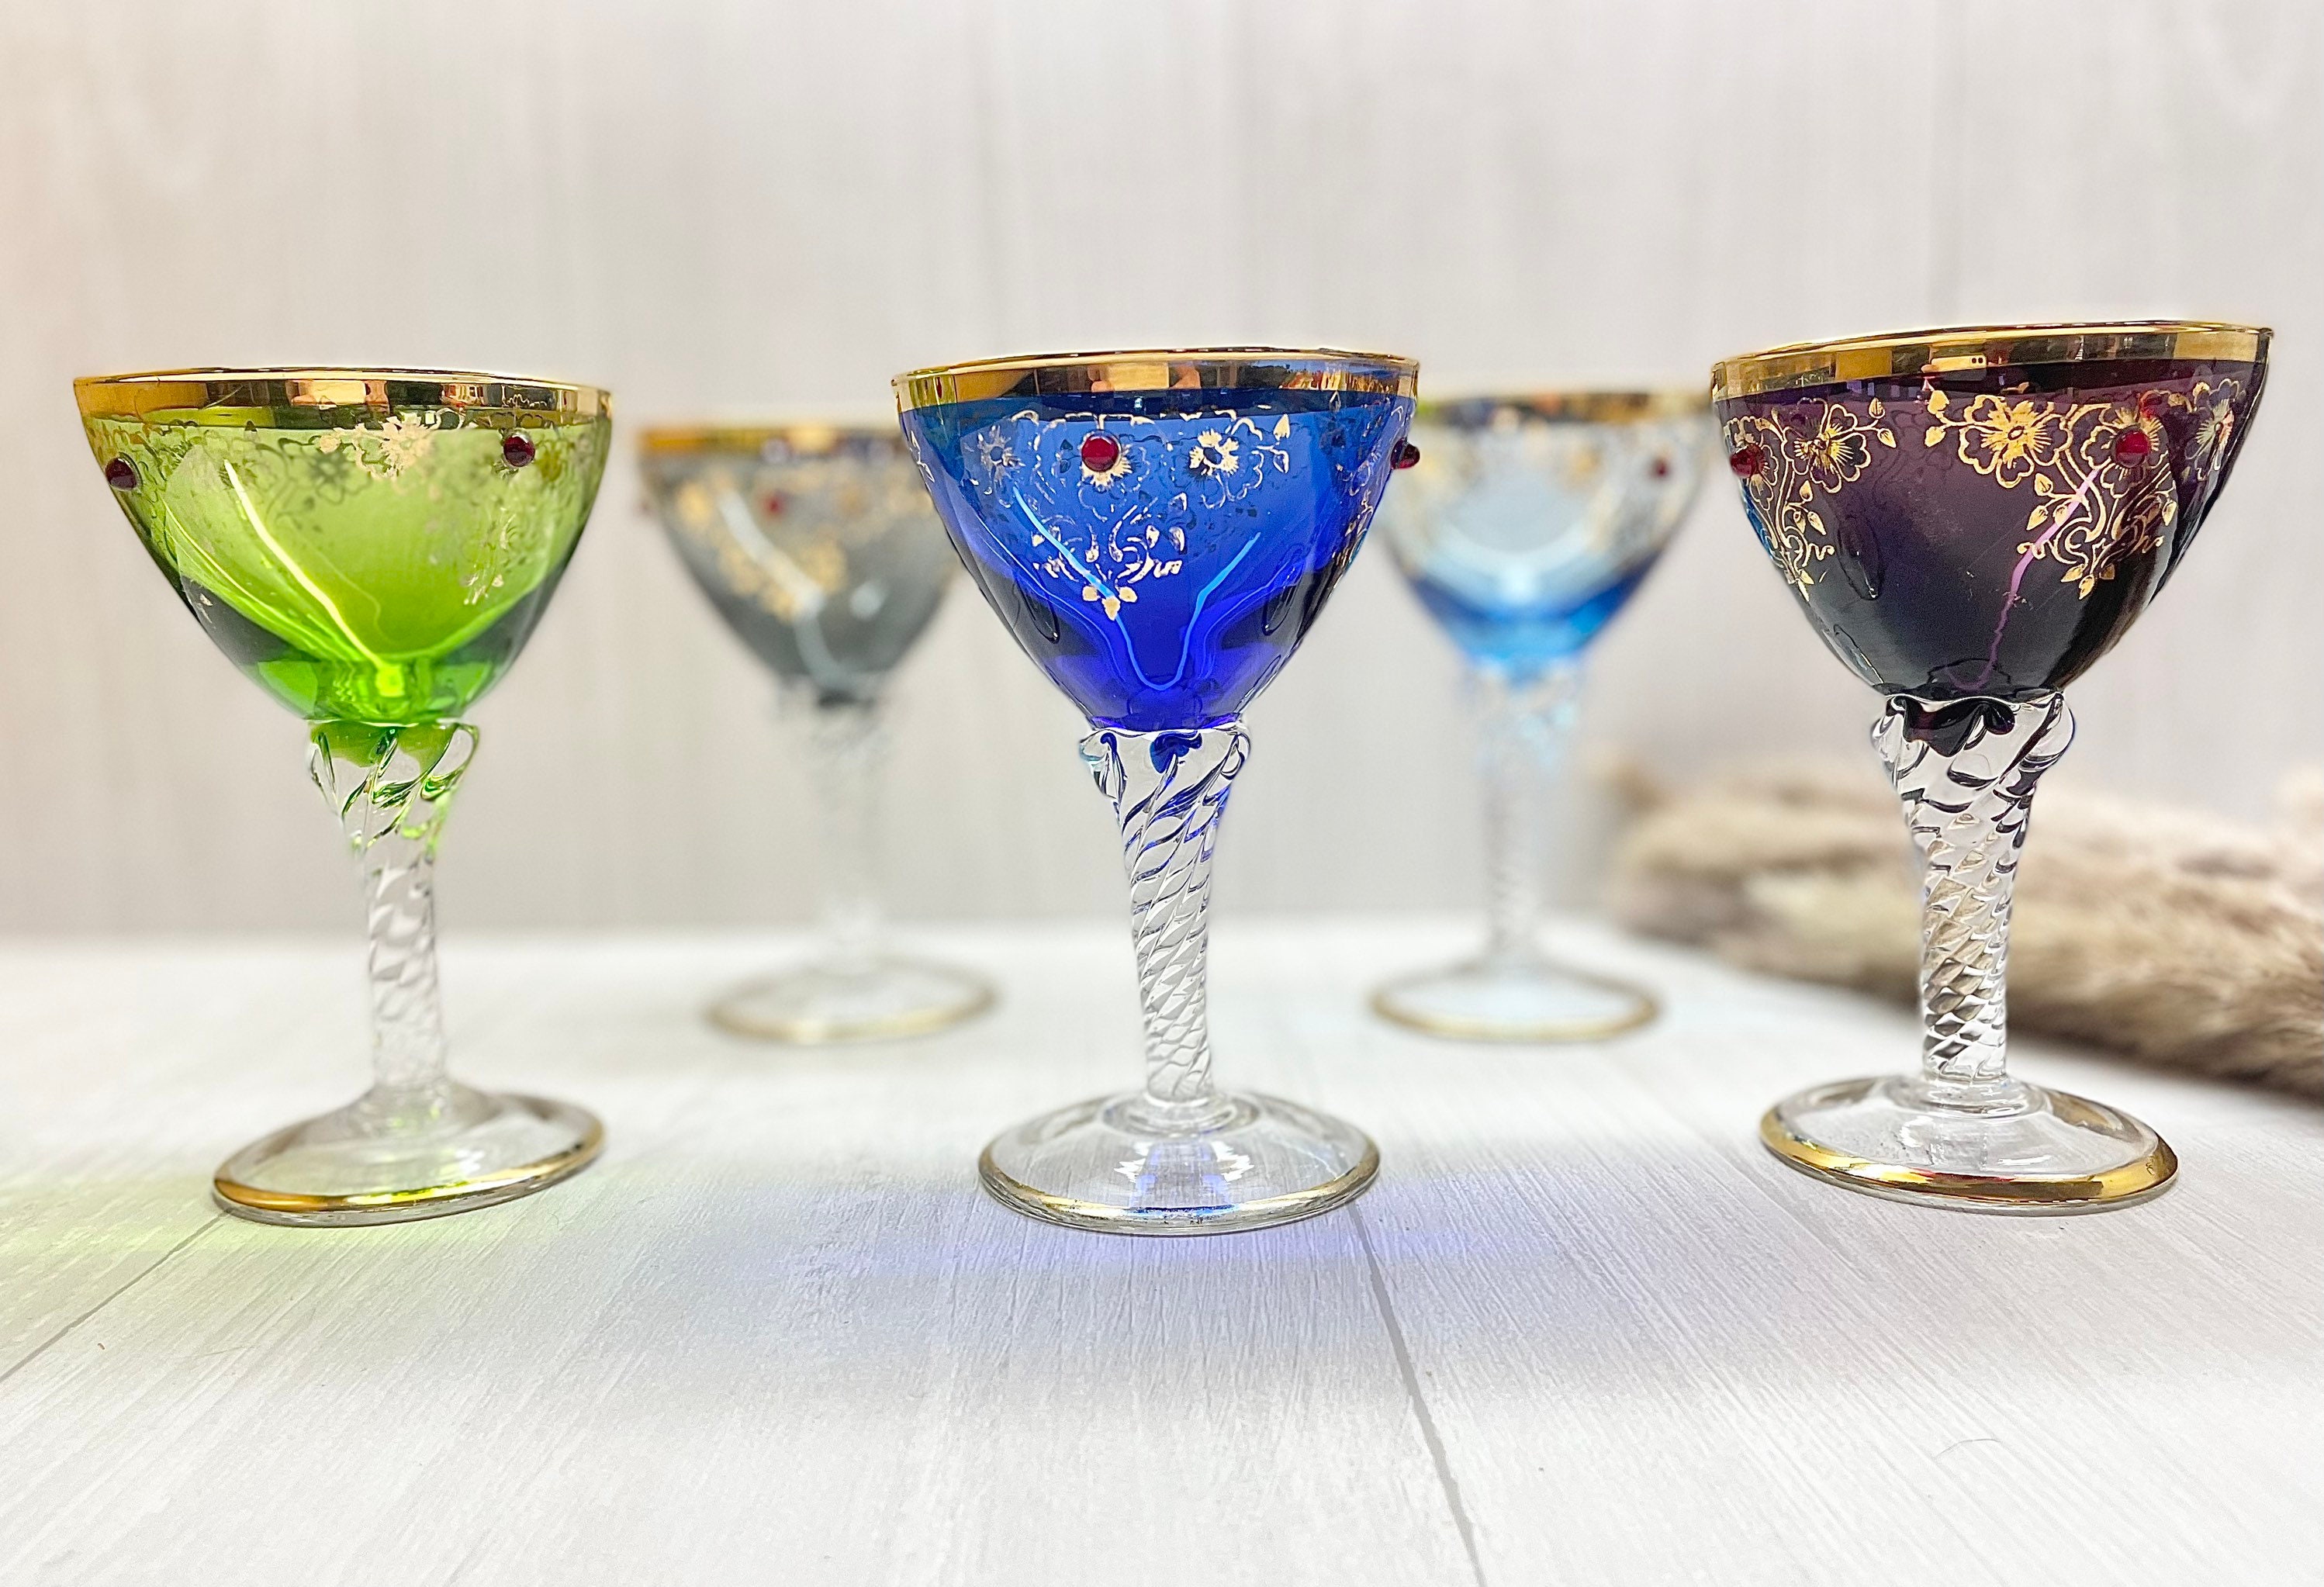 East Creek 8.5 oz Embossed Design Vintage Colored Glass Goblets with Stem Set of 6, Navy Blue